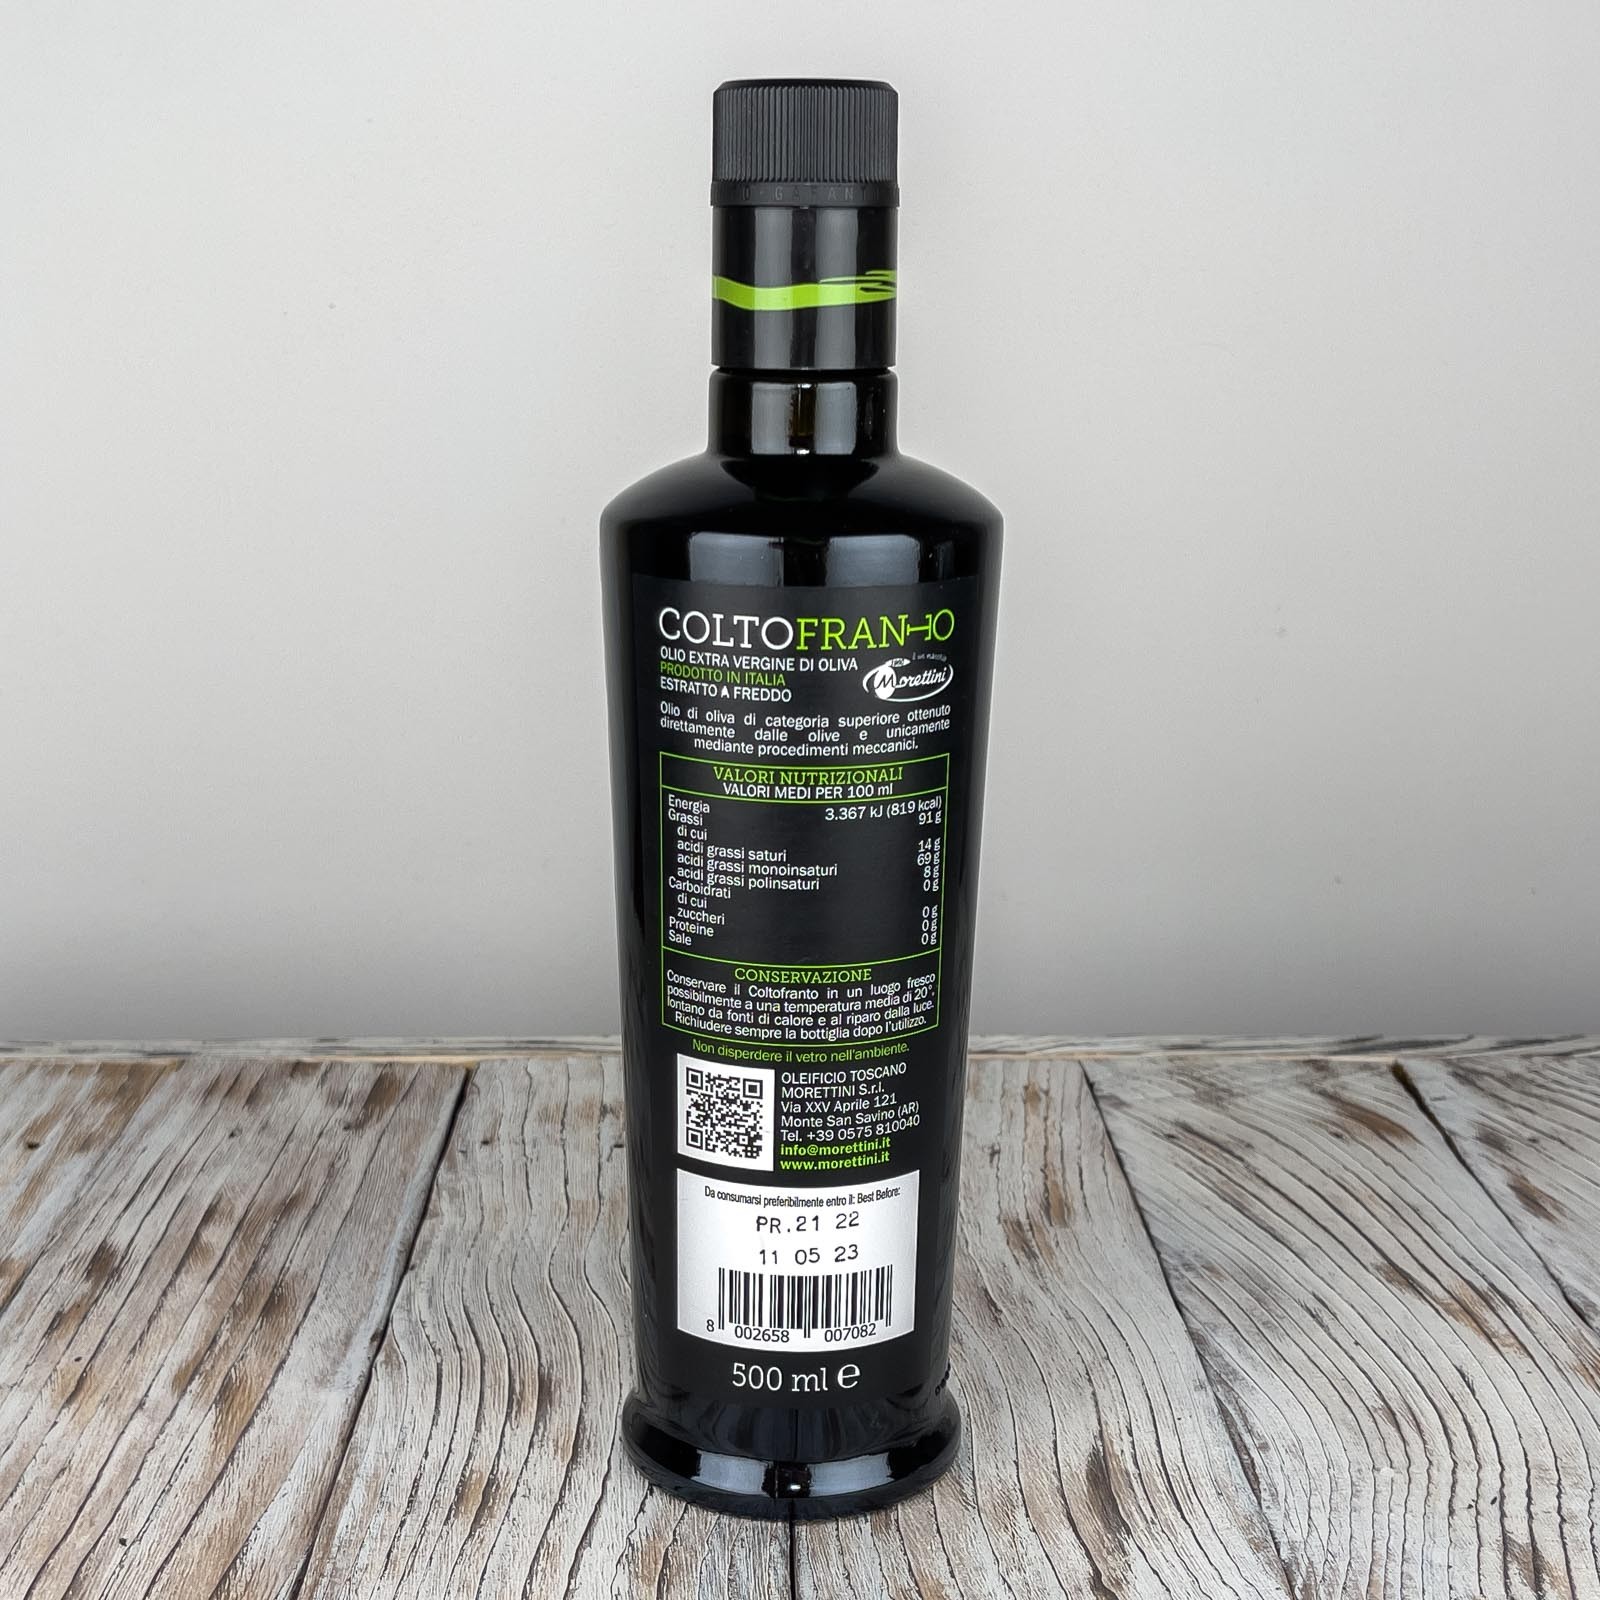 Grand Cru Coltofranto, olio extra vergine di oliva 100% italiano di altissima qualità, ottenuto dalla spremitura a freddo di olive verdi raccolte e immediatamente frante - Anno di produzione 2022/2023.